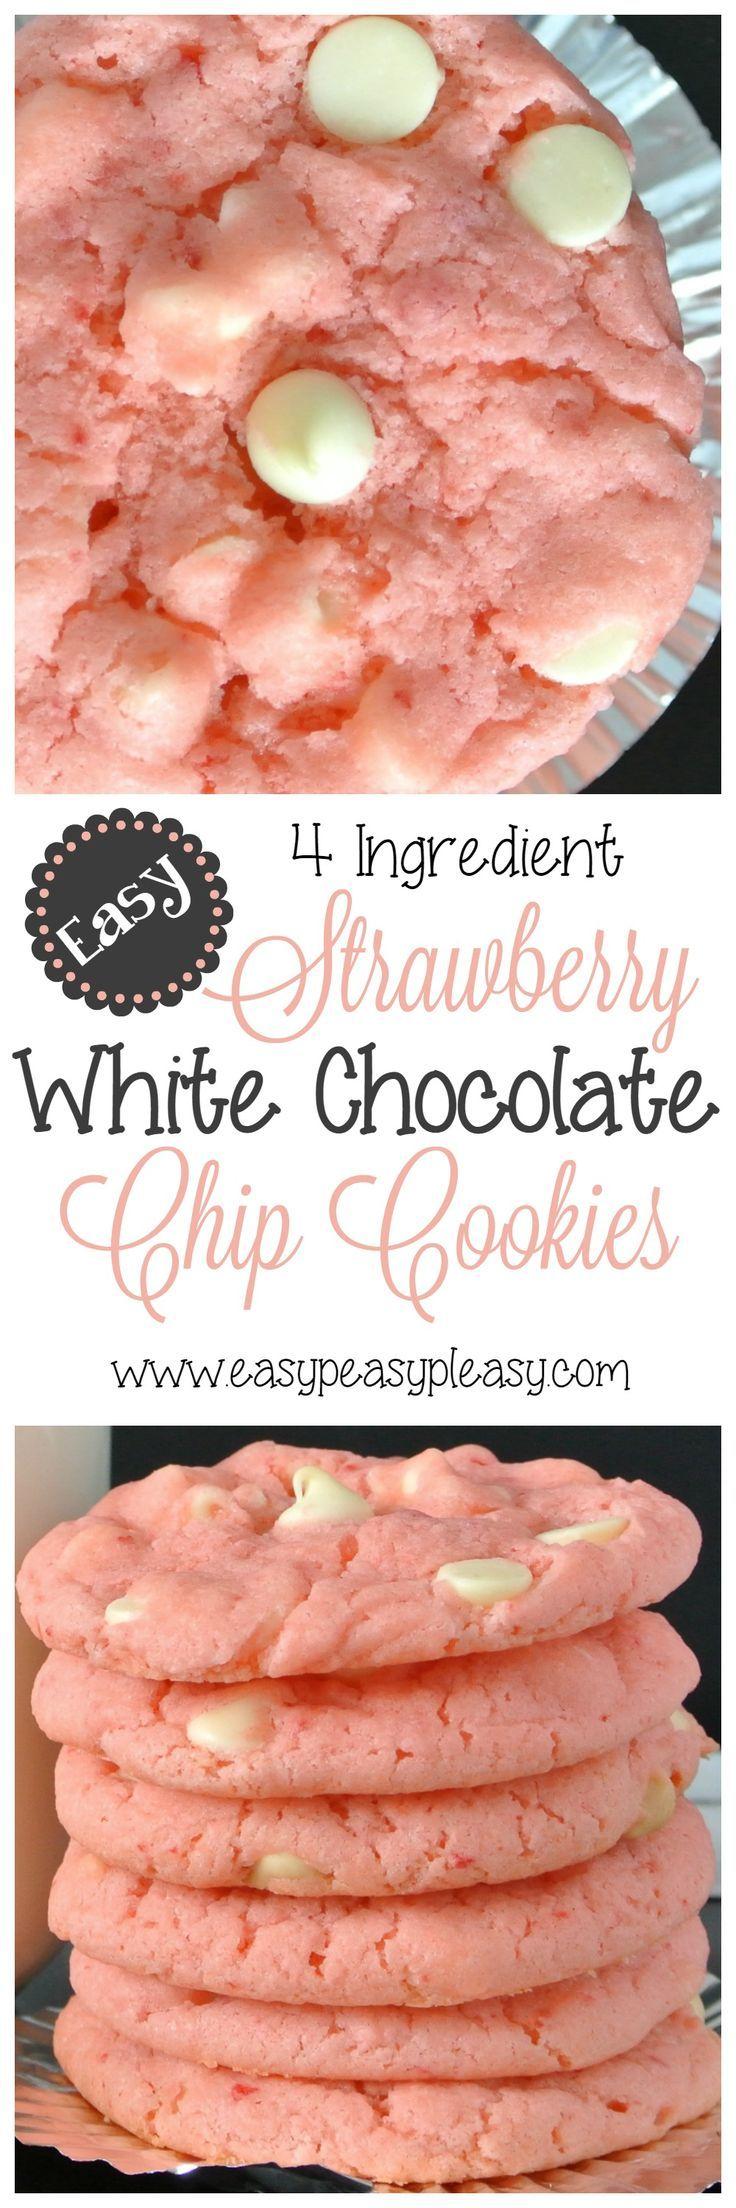 Свадьба - 4 Ingredient Strawberry White Chocolate Chip Cookies